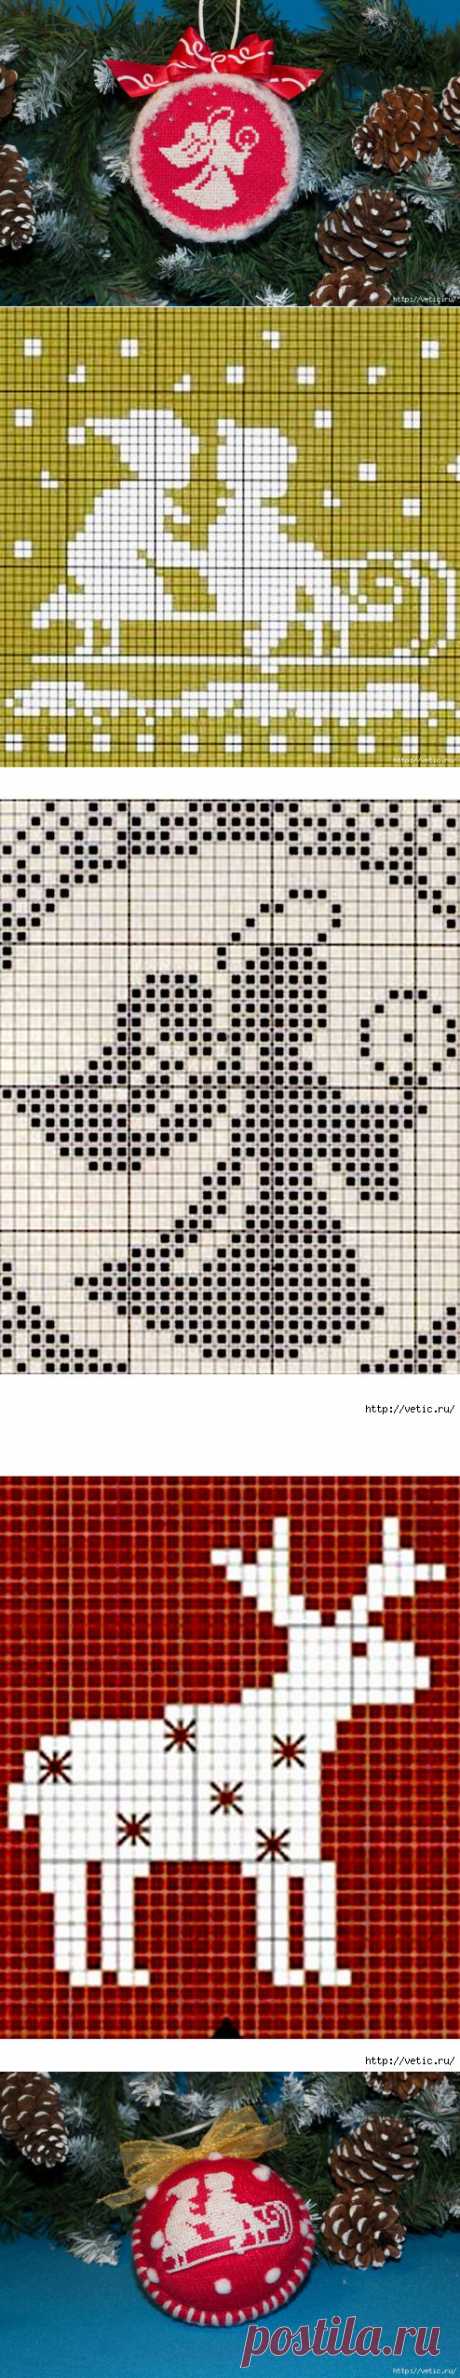 цитата Вышивка_крестиком : Вышиваем елочные шары ... 69 схемочек (08:05 17-11-2014) [2471788/343639733] - harchenko_17@mail.ru - Почта Mail.Ru